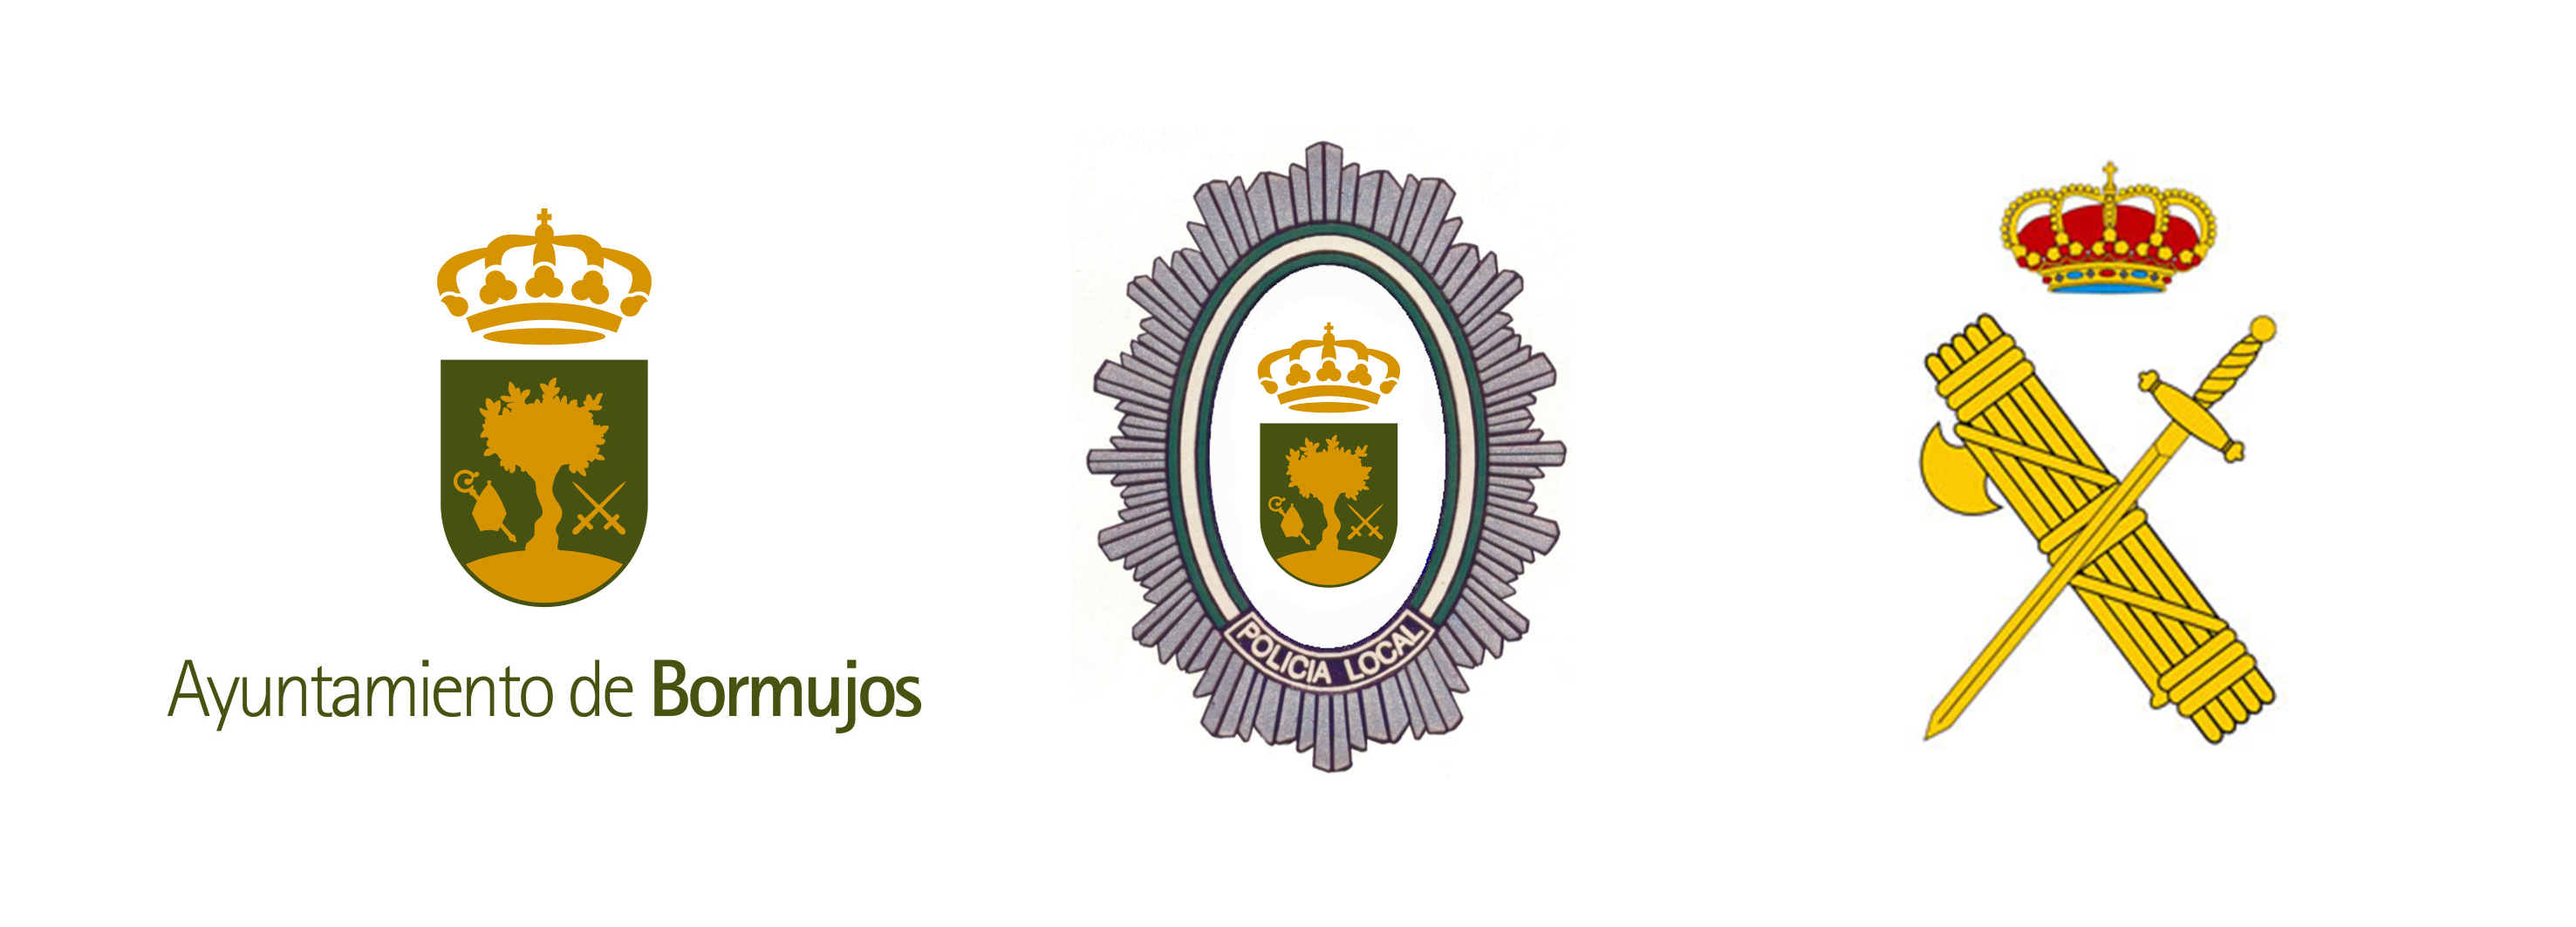 ayuntamiento bormujos   policia local  guardia civil